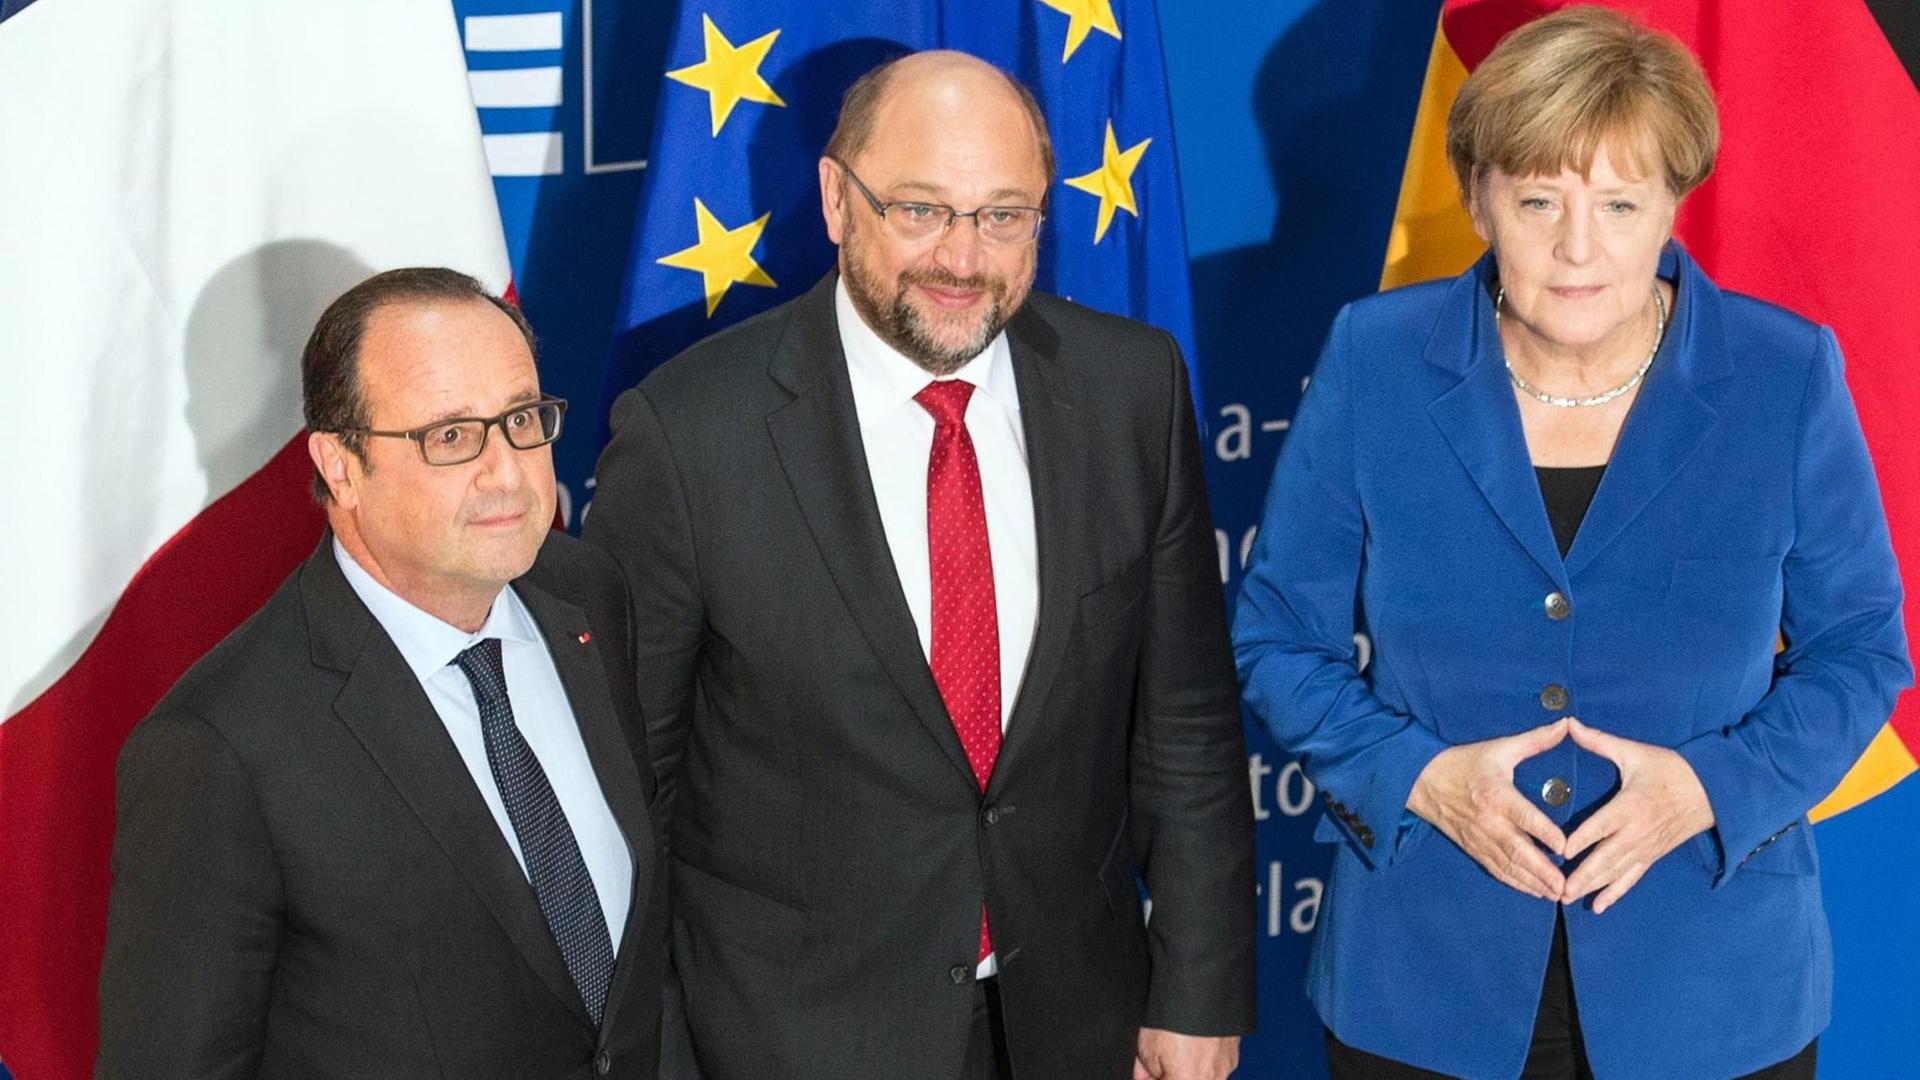 François Hollande, Martin Schulz und Angela Merkel vor den Flaggen Frankreichs, der EU und Deutschlands.